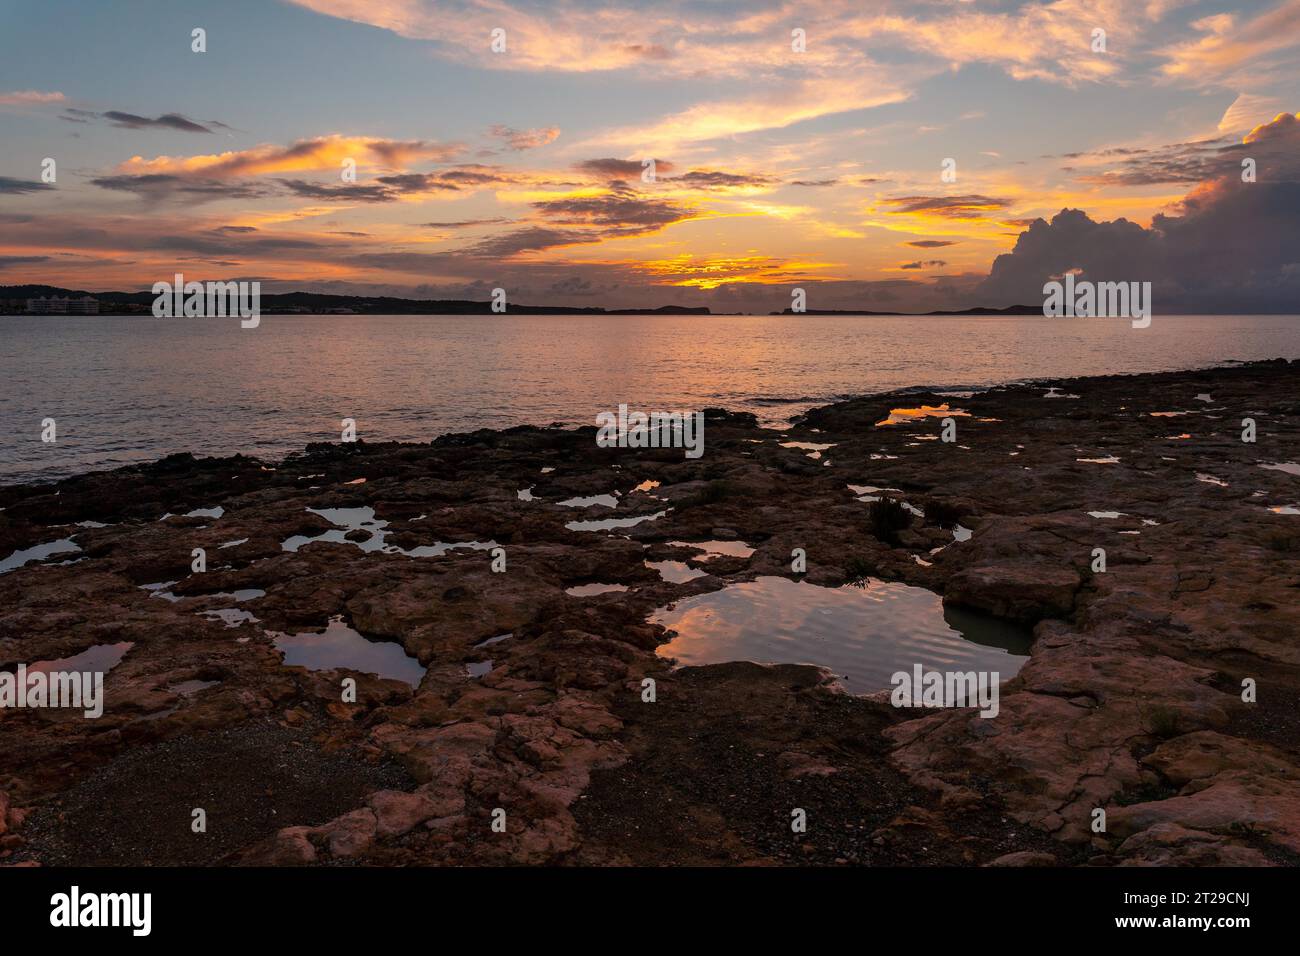 Paesaggio al tramonto a San Antonio Abad, Ibiza Island, Baleari. Piccole pozzanghere in riva al mare Foto Stock